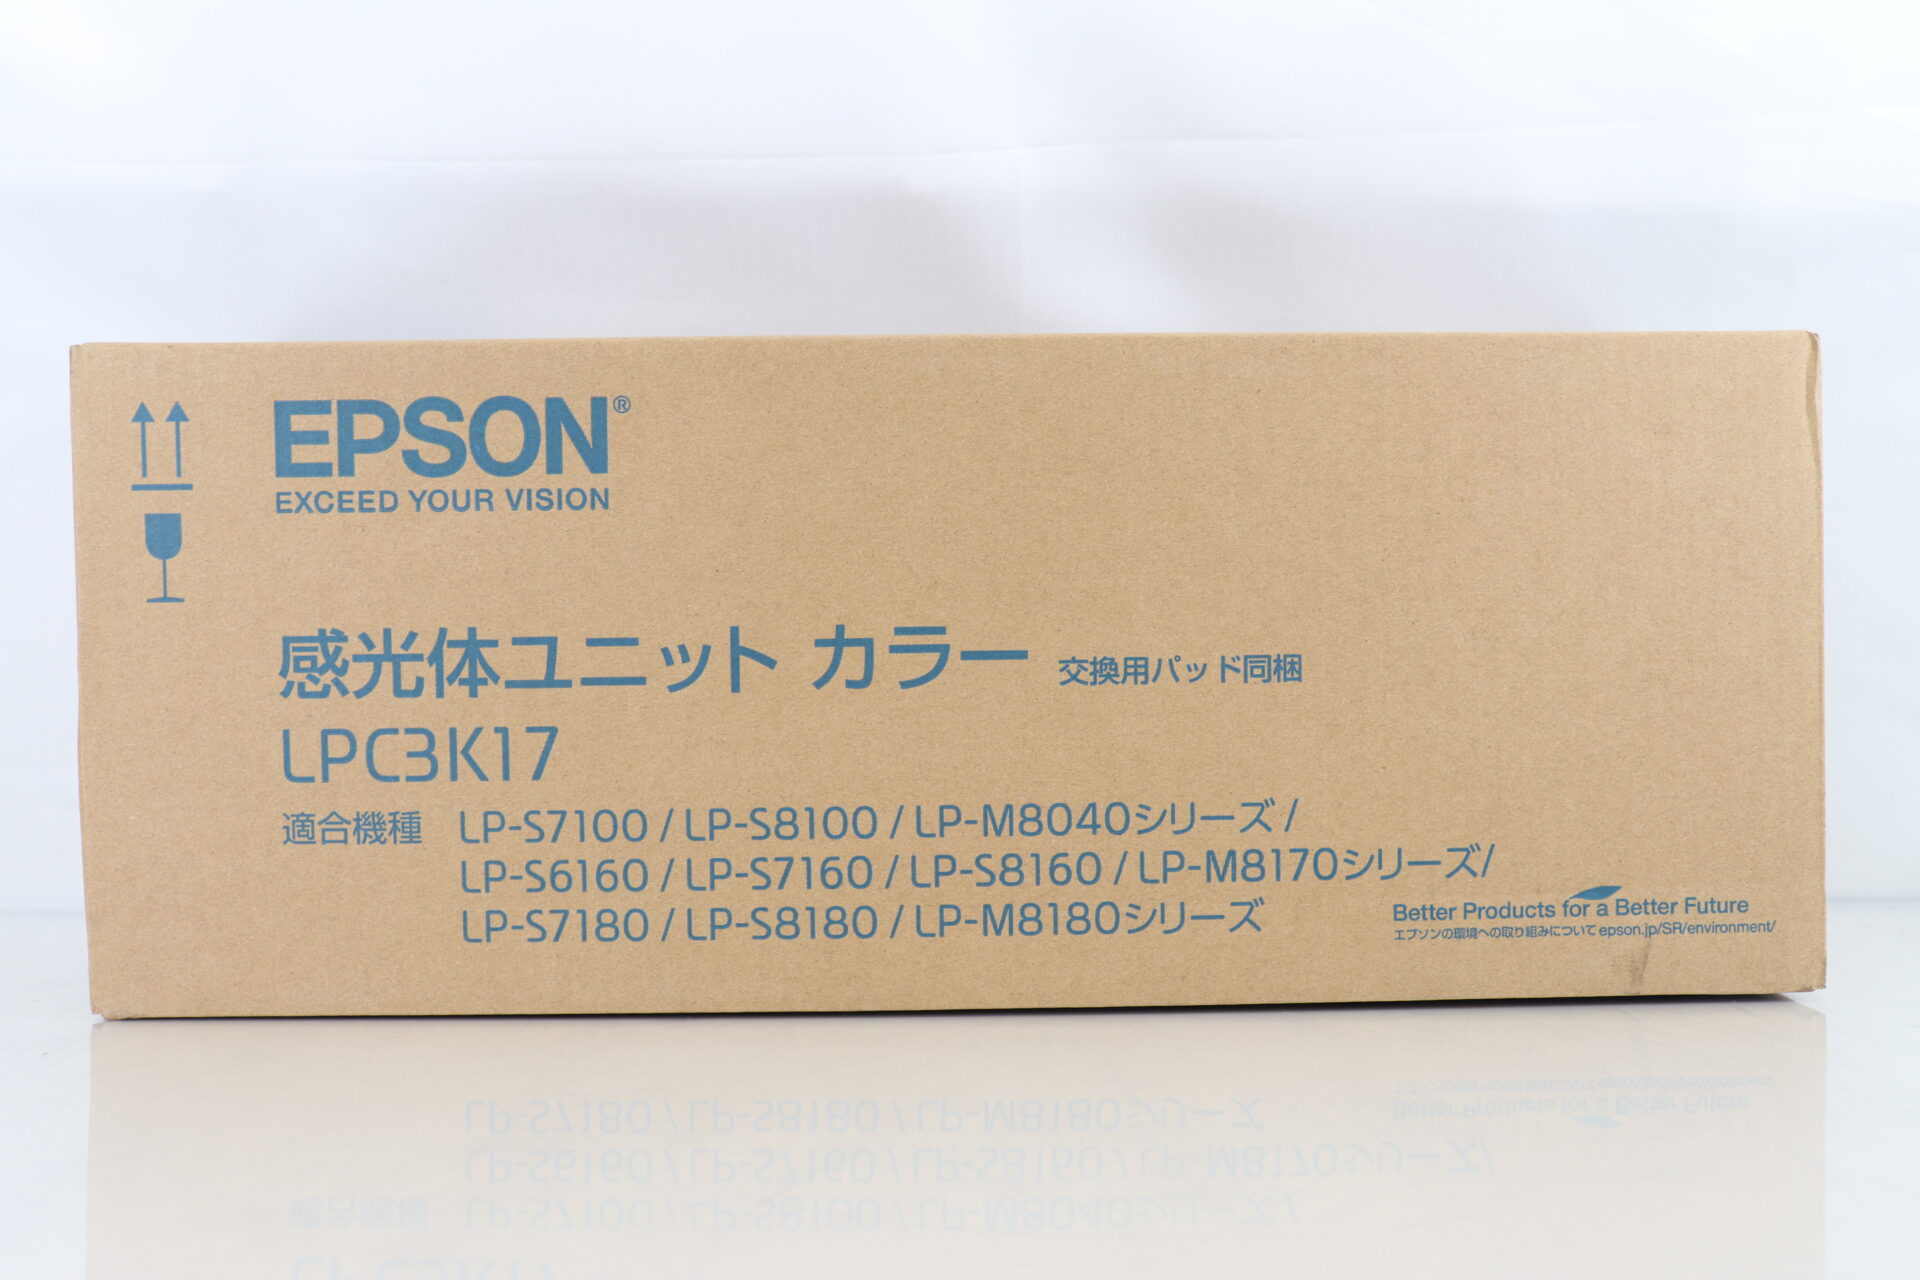 エプソン 感光体ユニット カラー LPC3K17 正面